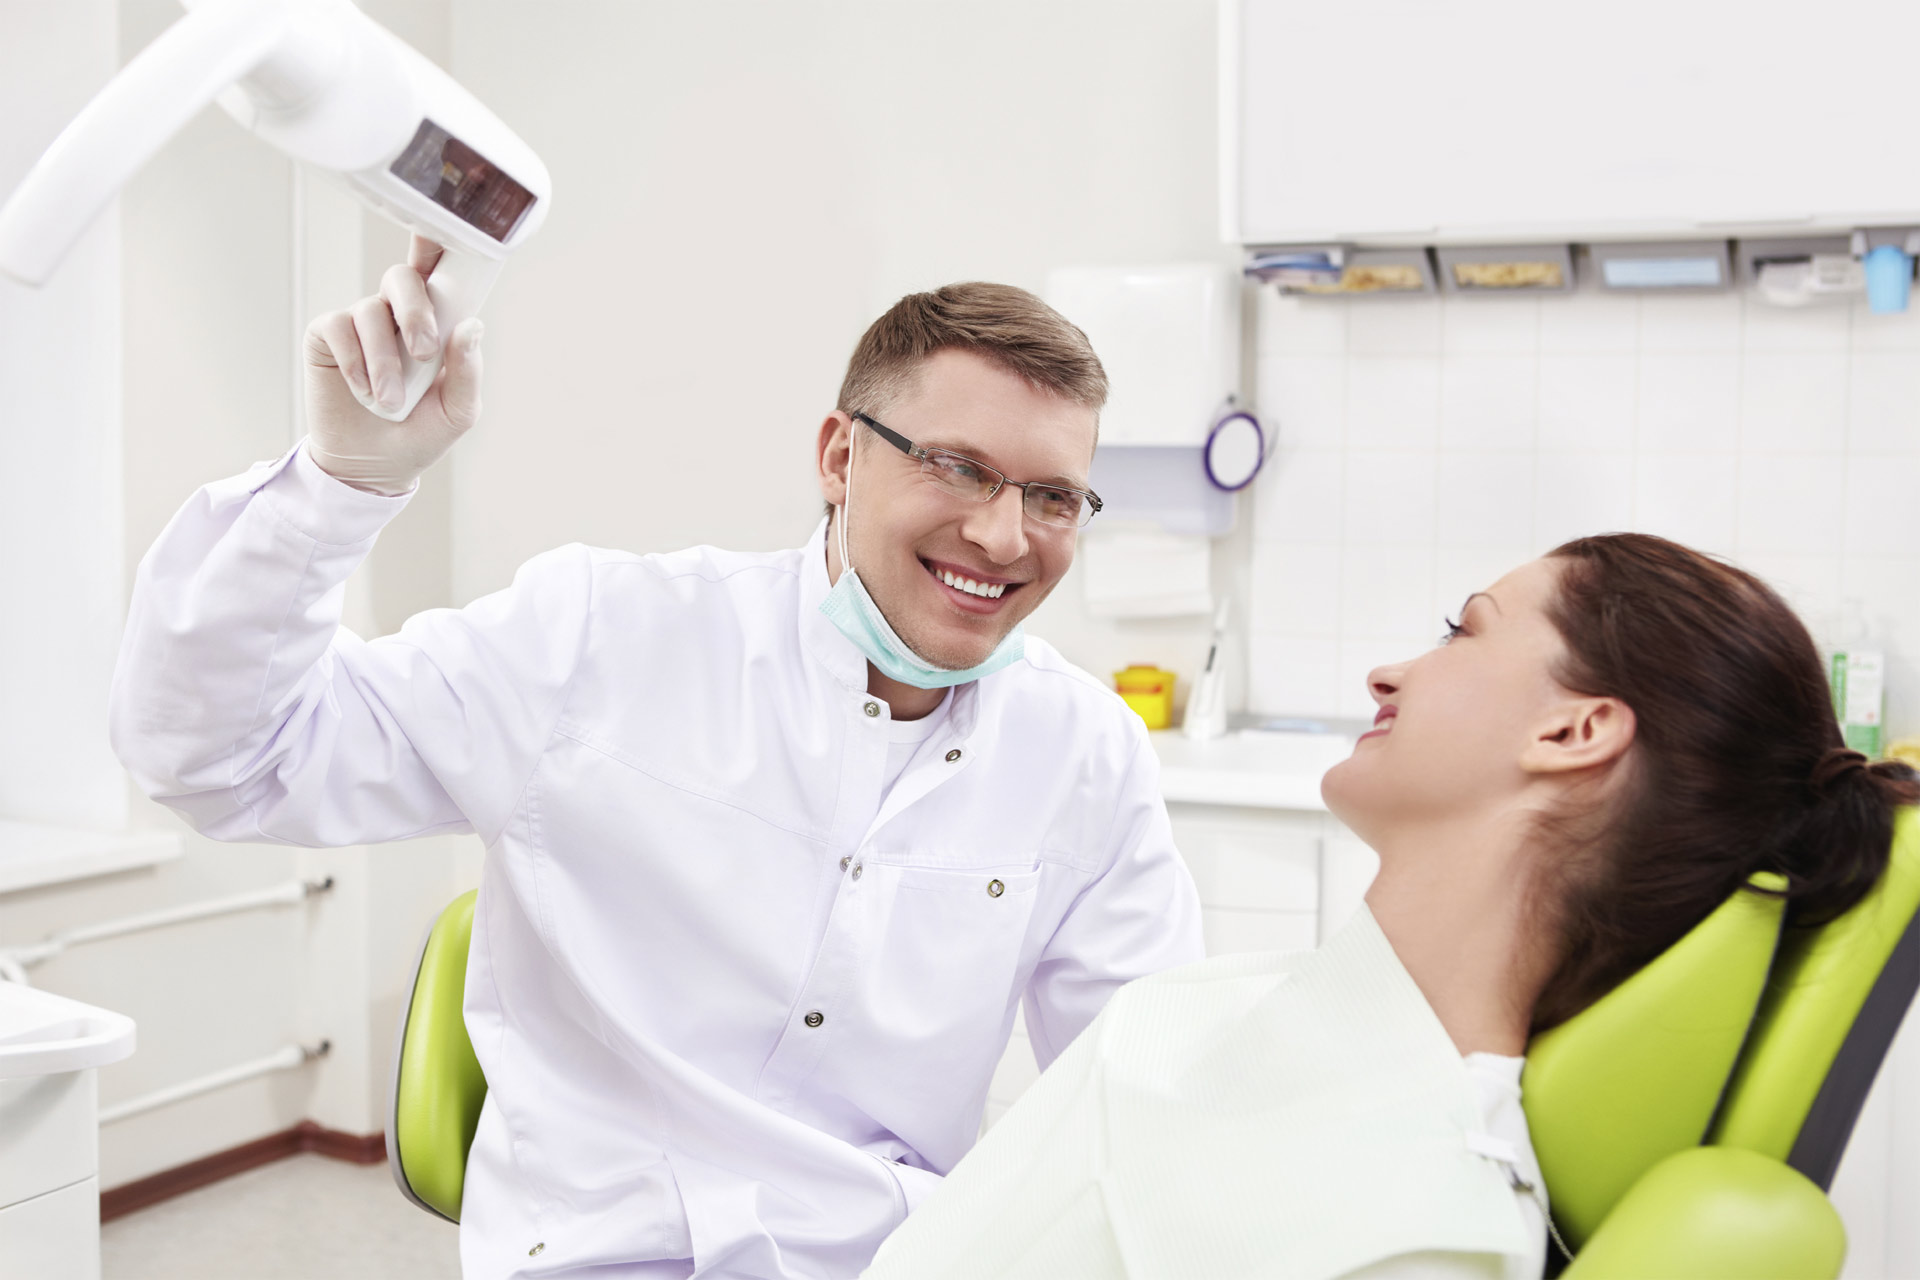 Investigadores ofrecen una solución a las personas que le tienen pánico al dentista: la terapia cognitiva conductual